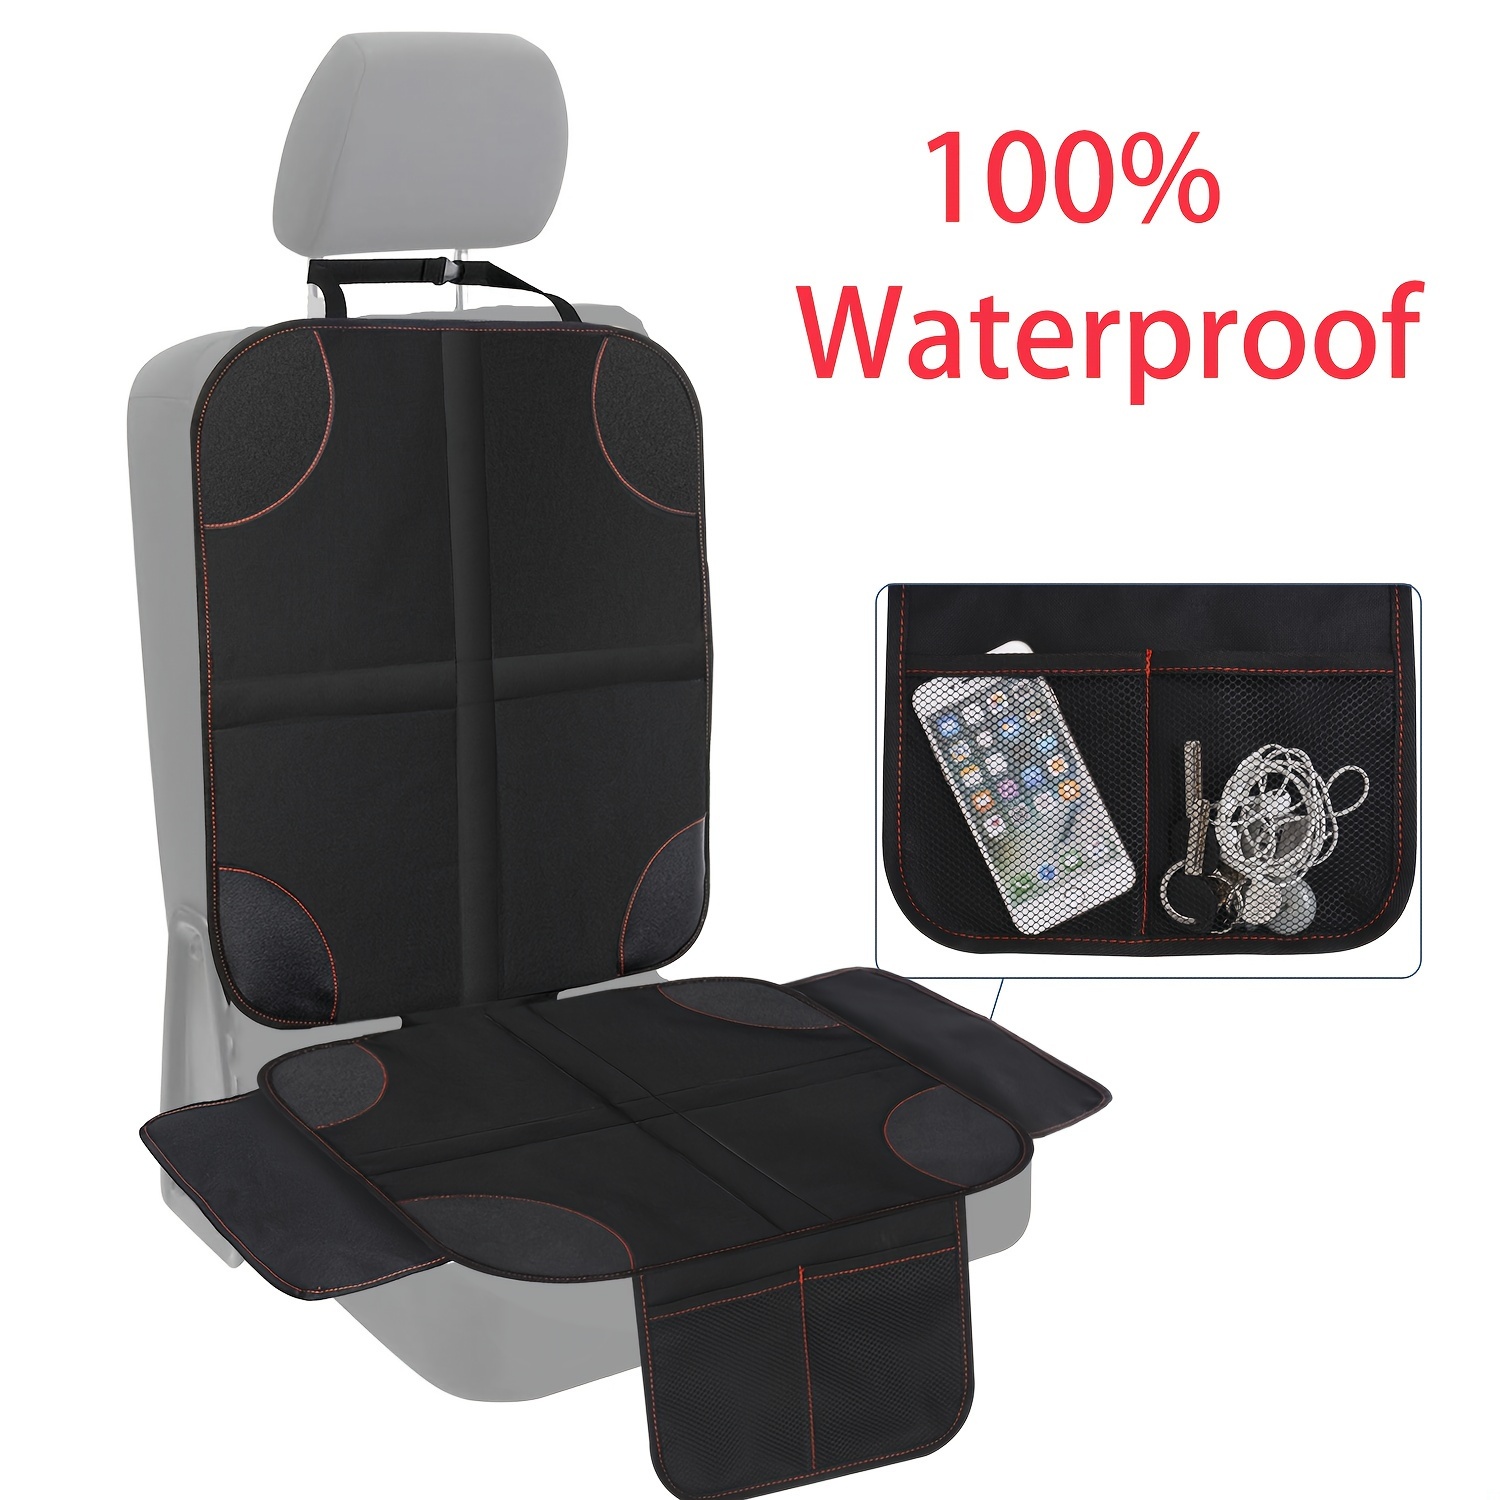 Handtuchbezug für Autositz, Slip-On Sitzauflage, Autositzbezug